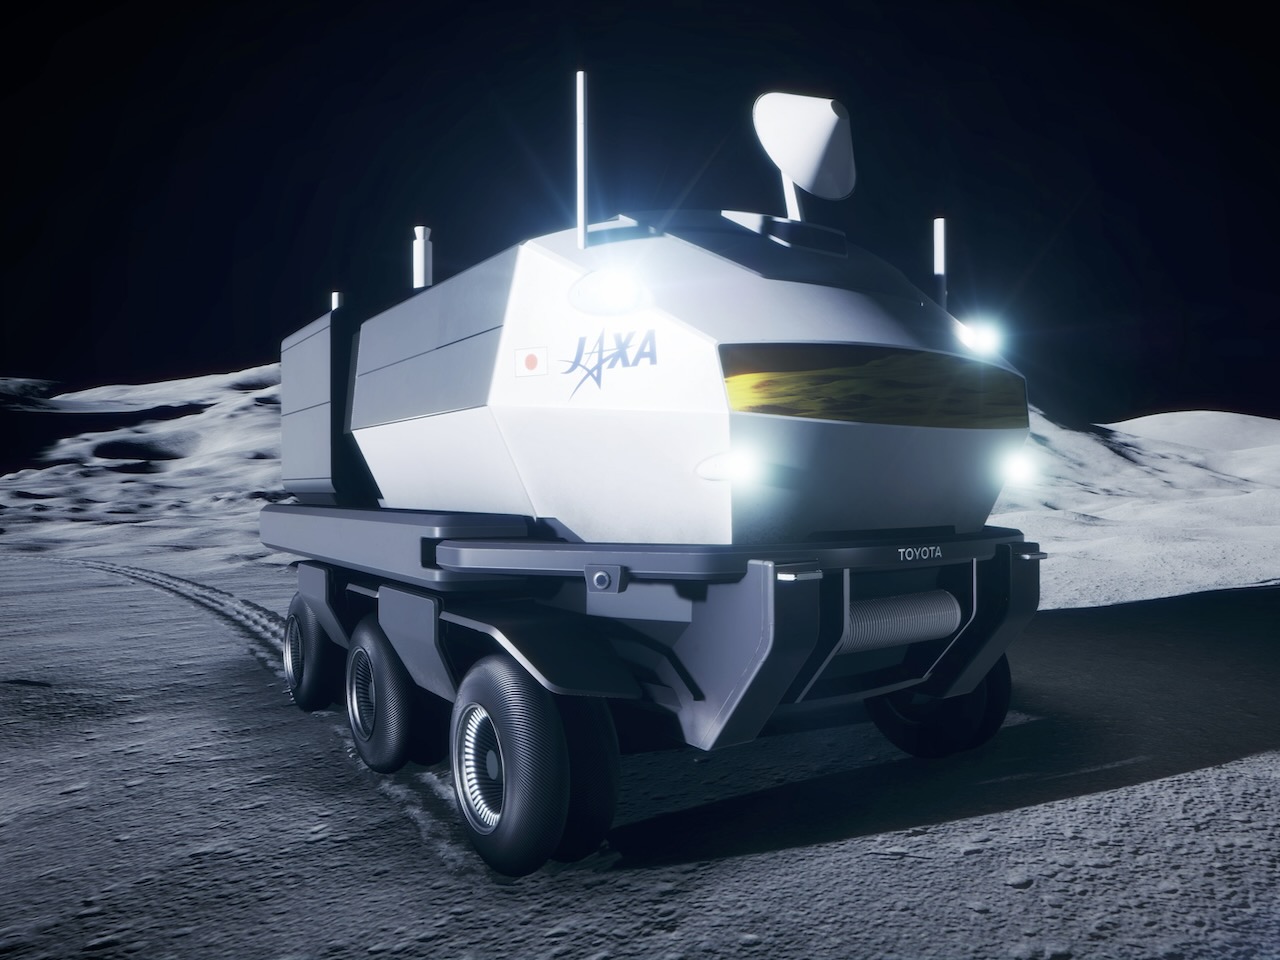 トヨタの月面探査車「ルナクルーザー」が月面へ–日米政府が署名、JAXA飛行士7名もコメント